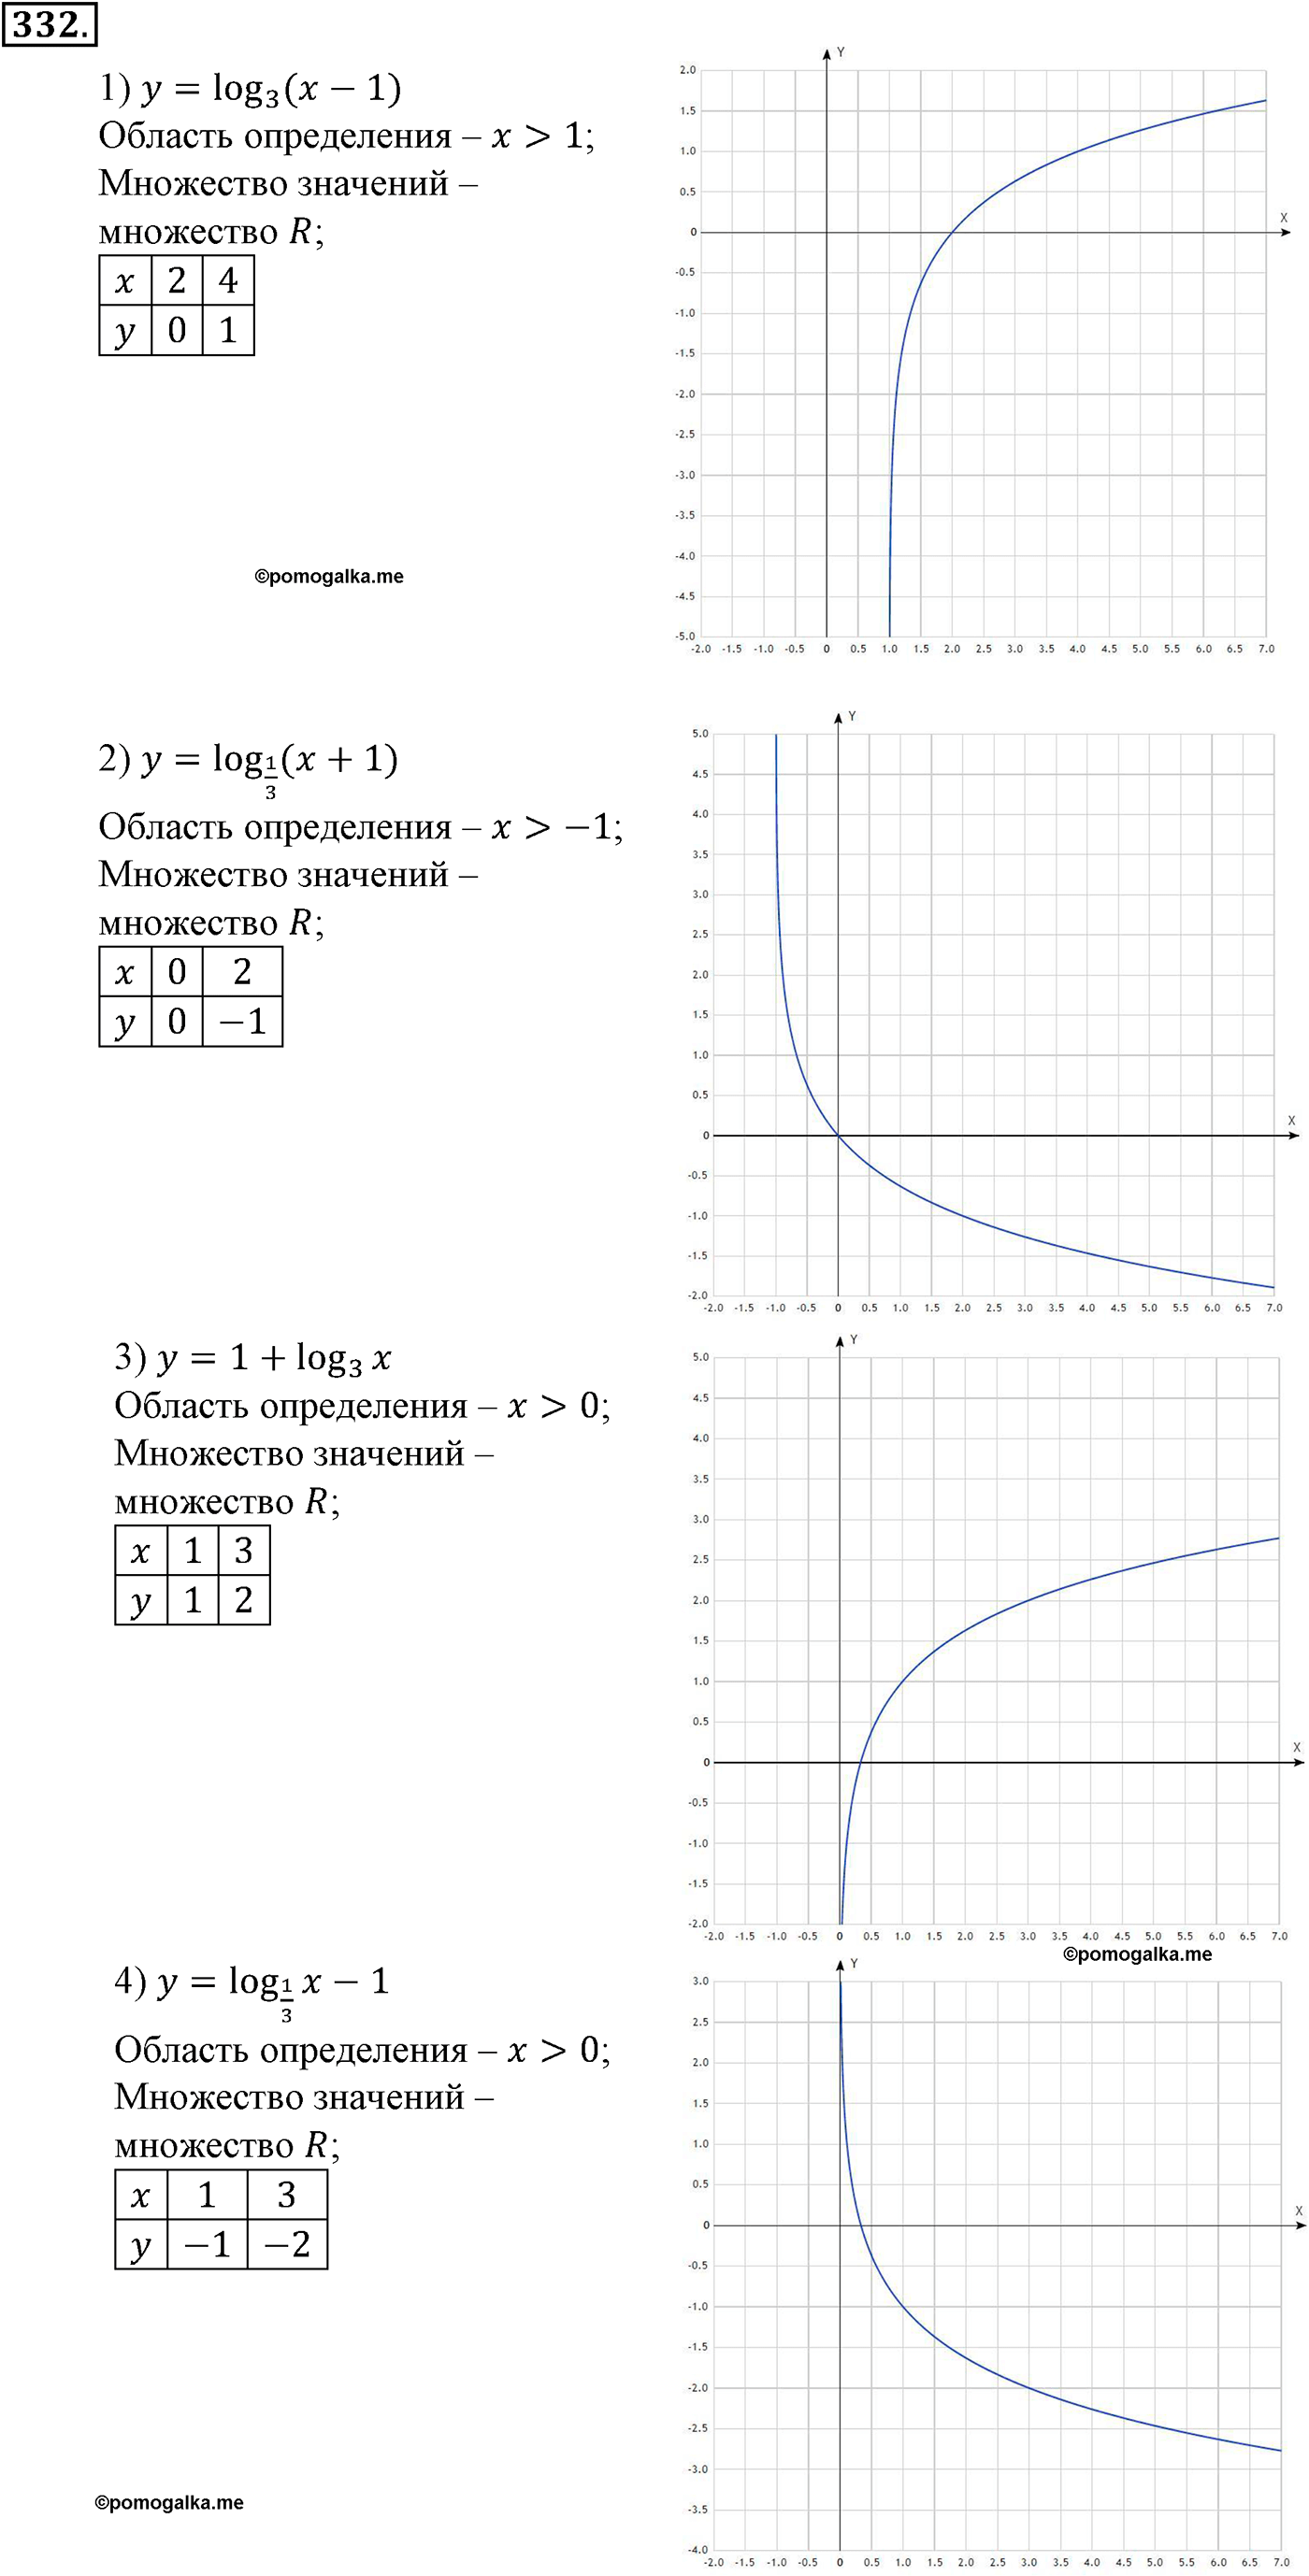 разбор задачи №332 по алгебре за 10-11 класс из учебника Алимова, Колягина